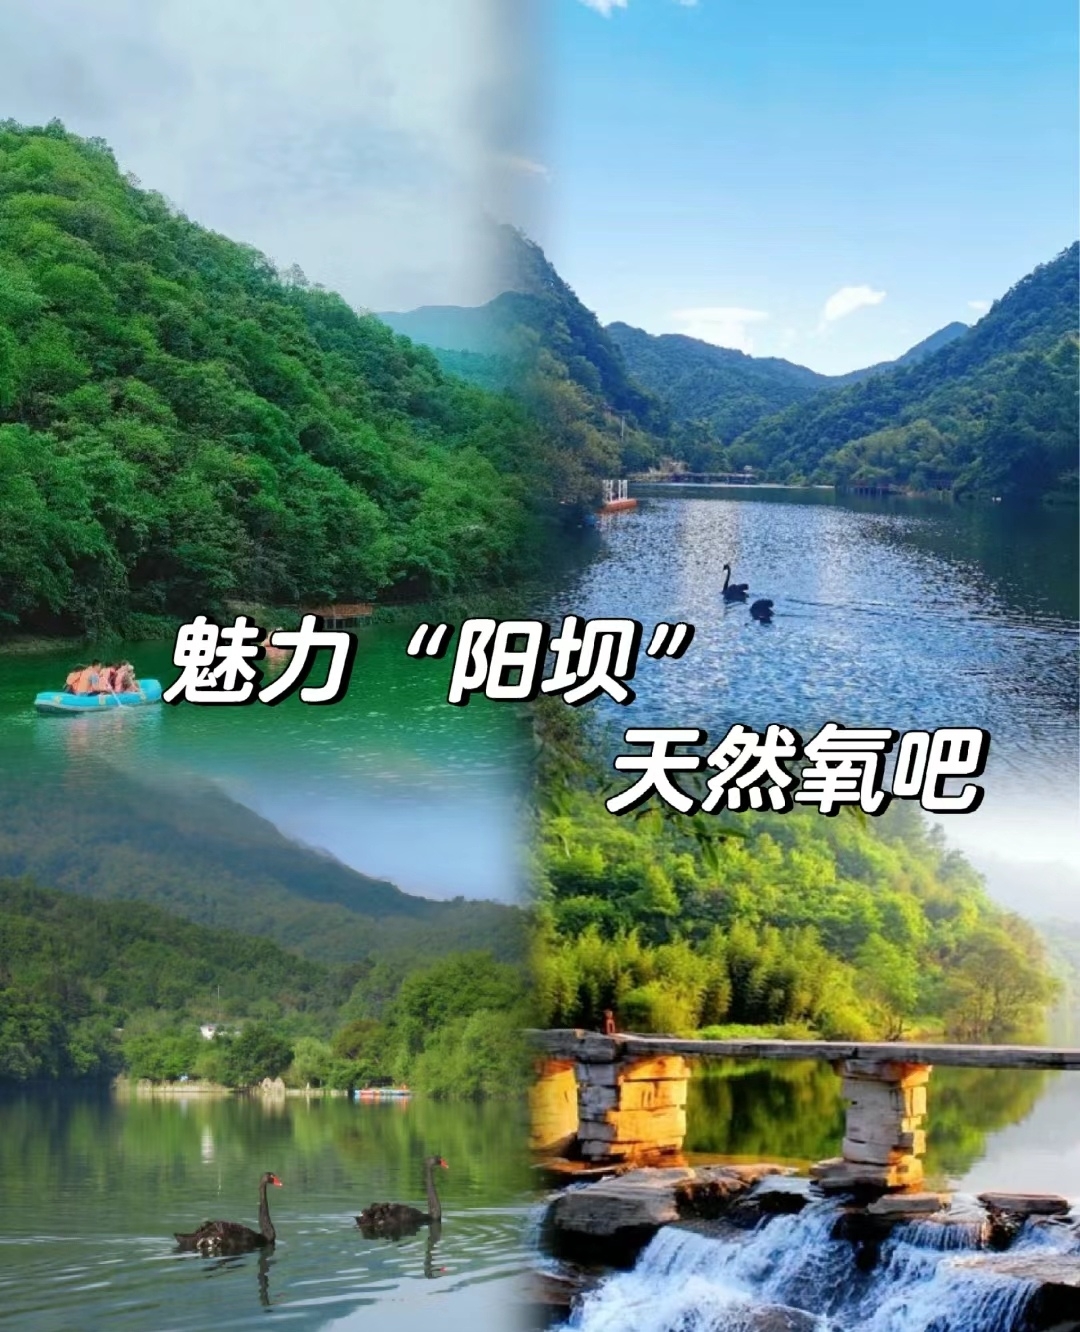 陇南阳坝位于甘肃省陇南市康县，这里有美丽的自然风光，也有丰富的历史文化。以下是一篇详细的游玩攻略： 